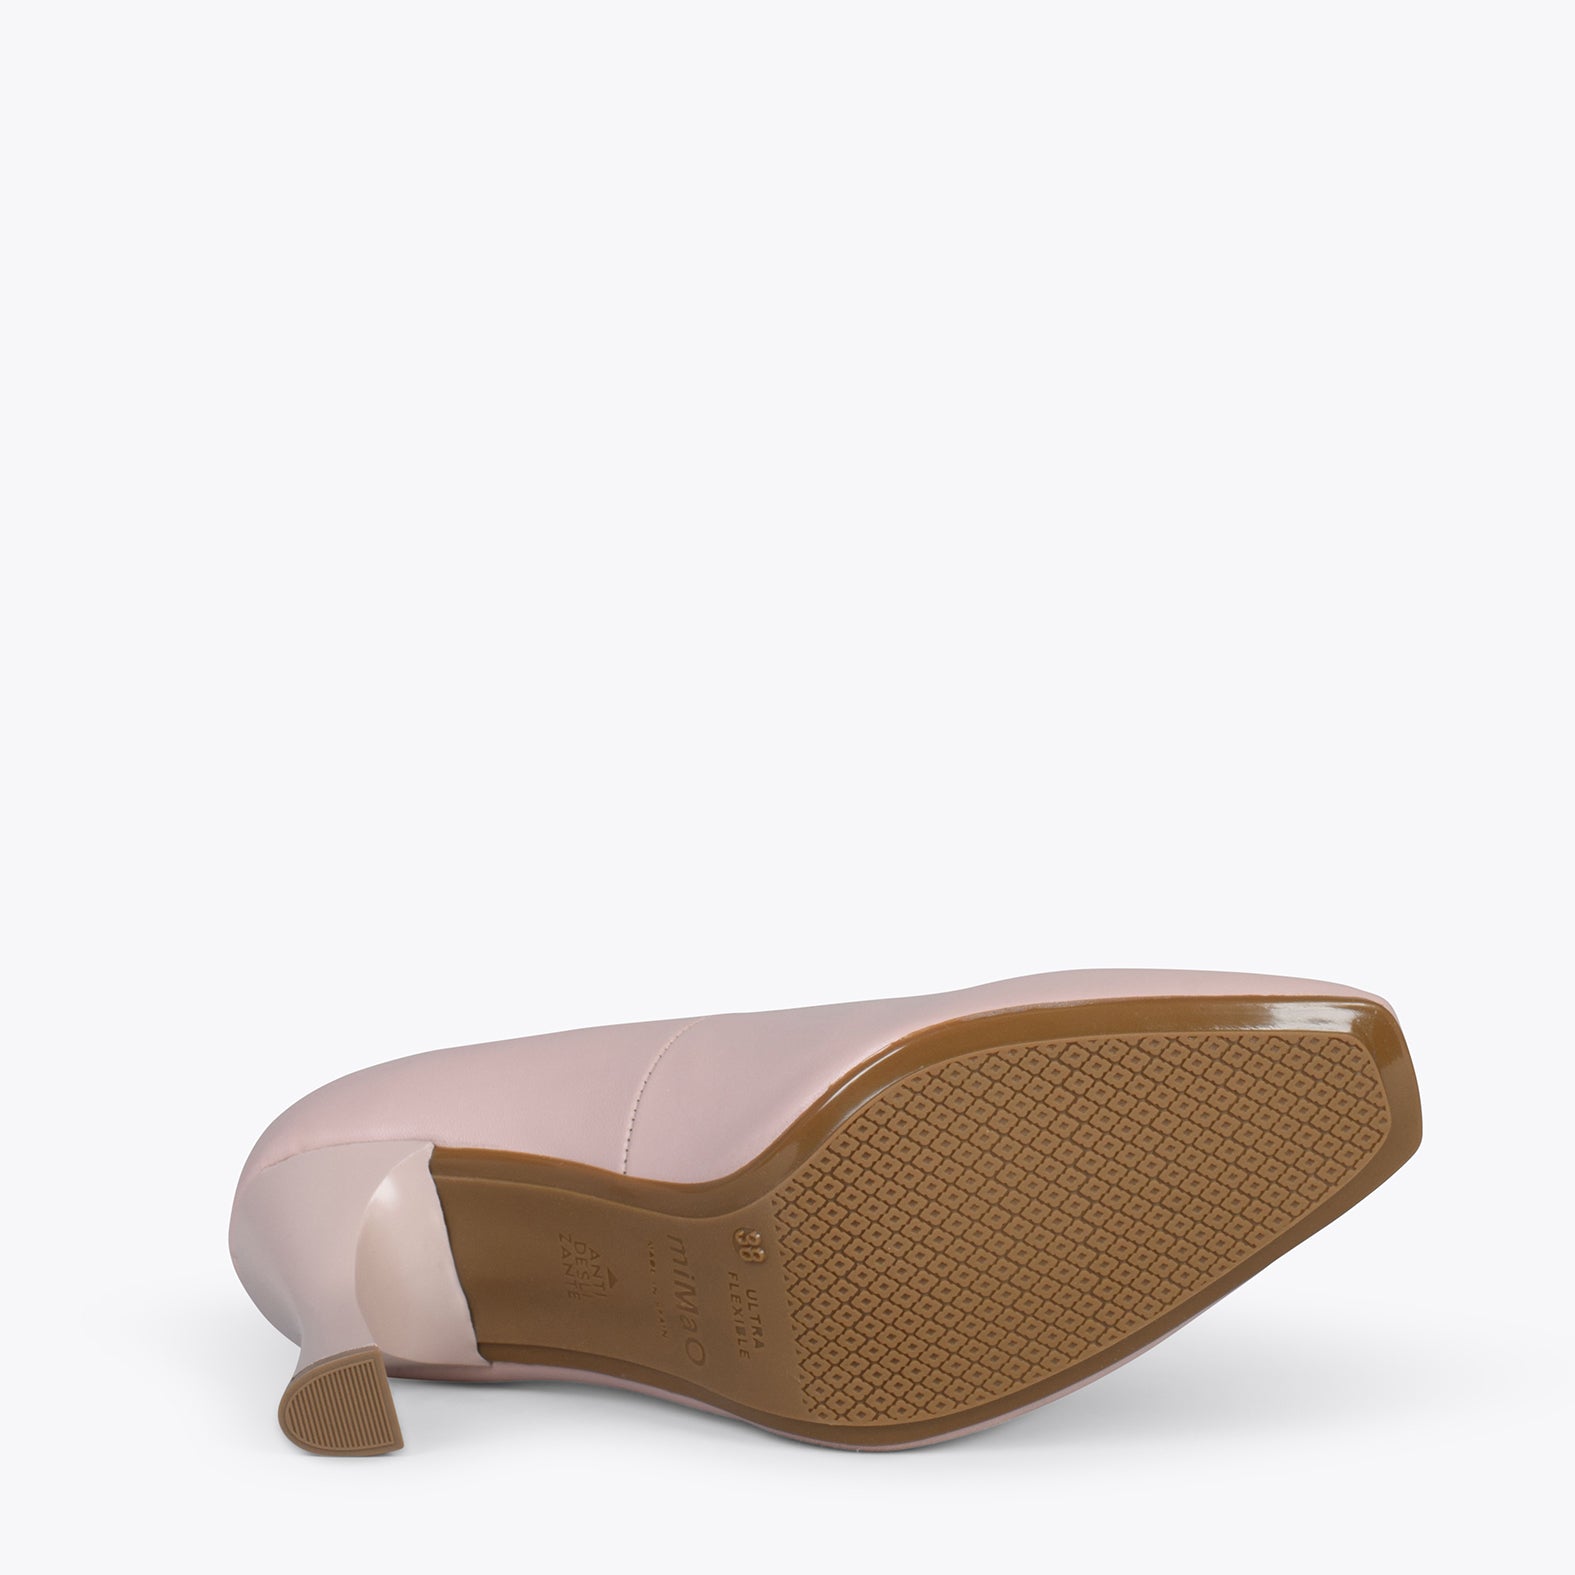 URBAN GLAM CUADRADO – Zapatos de tacón de campana NUDE